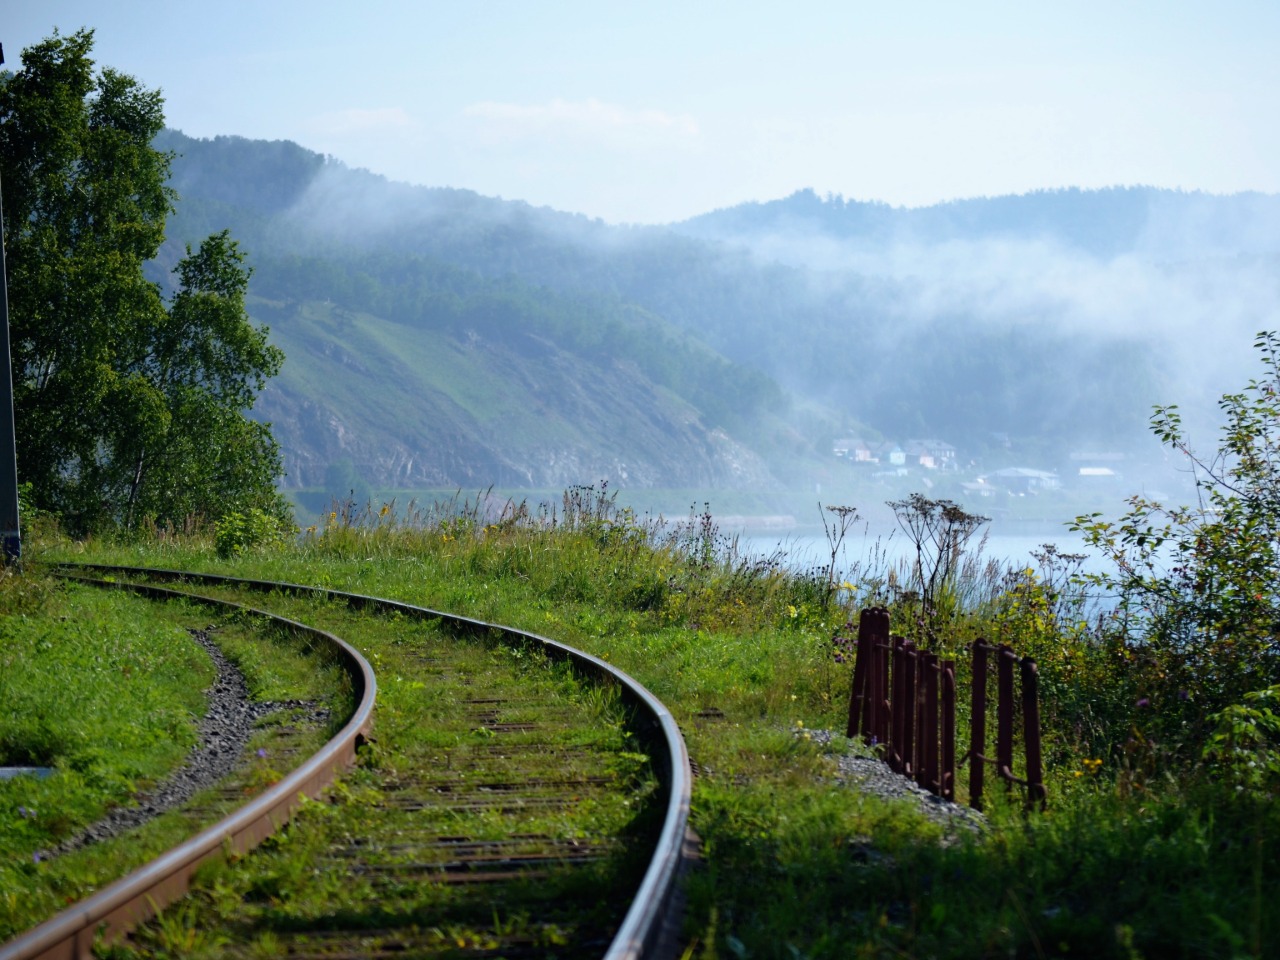 По Кругобайкальской железной дороге пешком | Цена 12000₽, отзывы, описание экскурсии